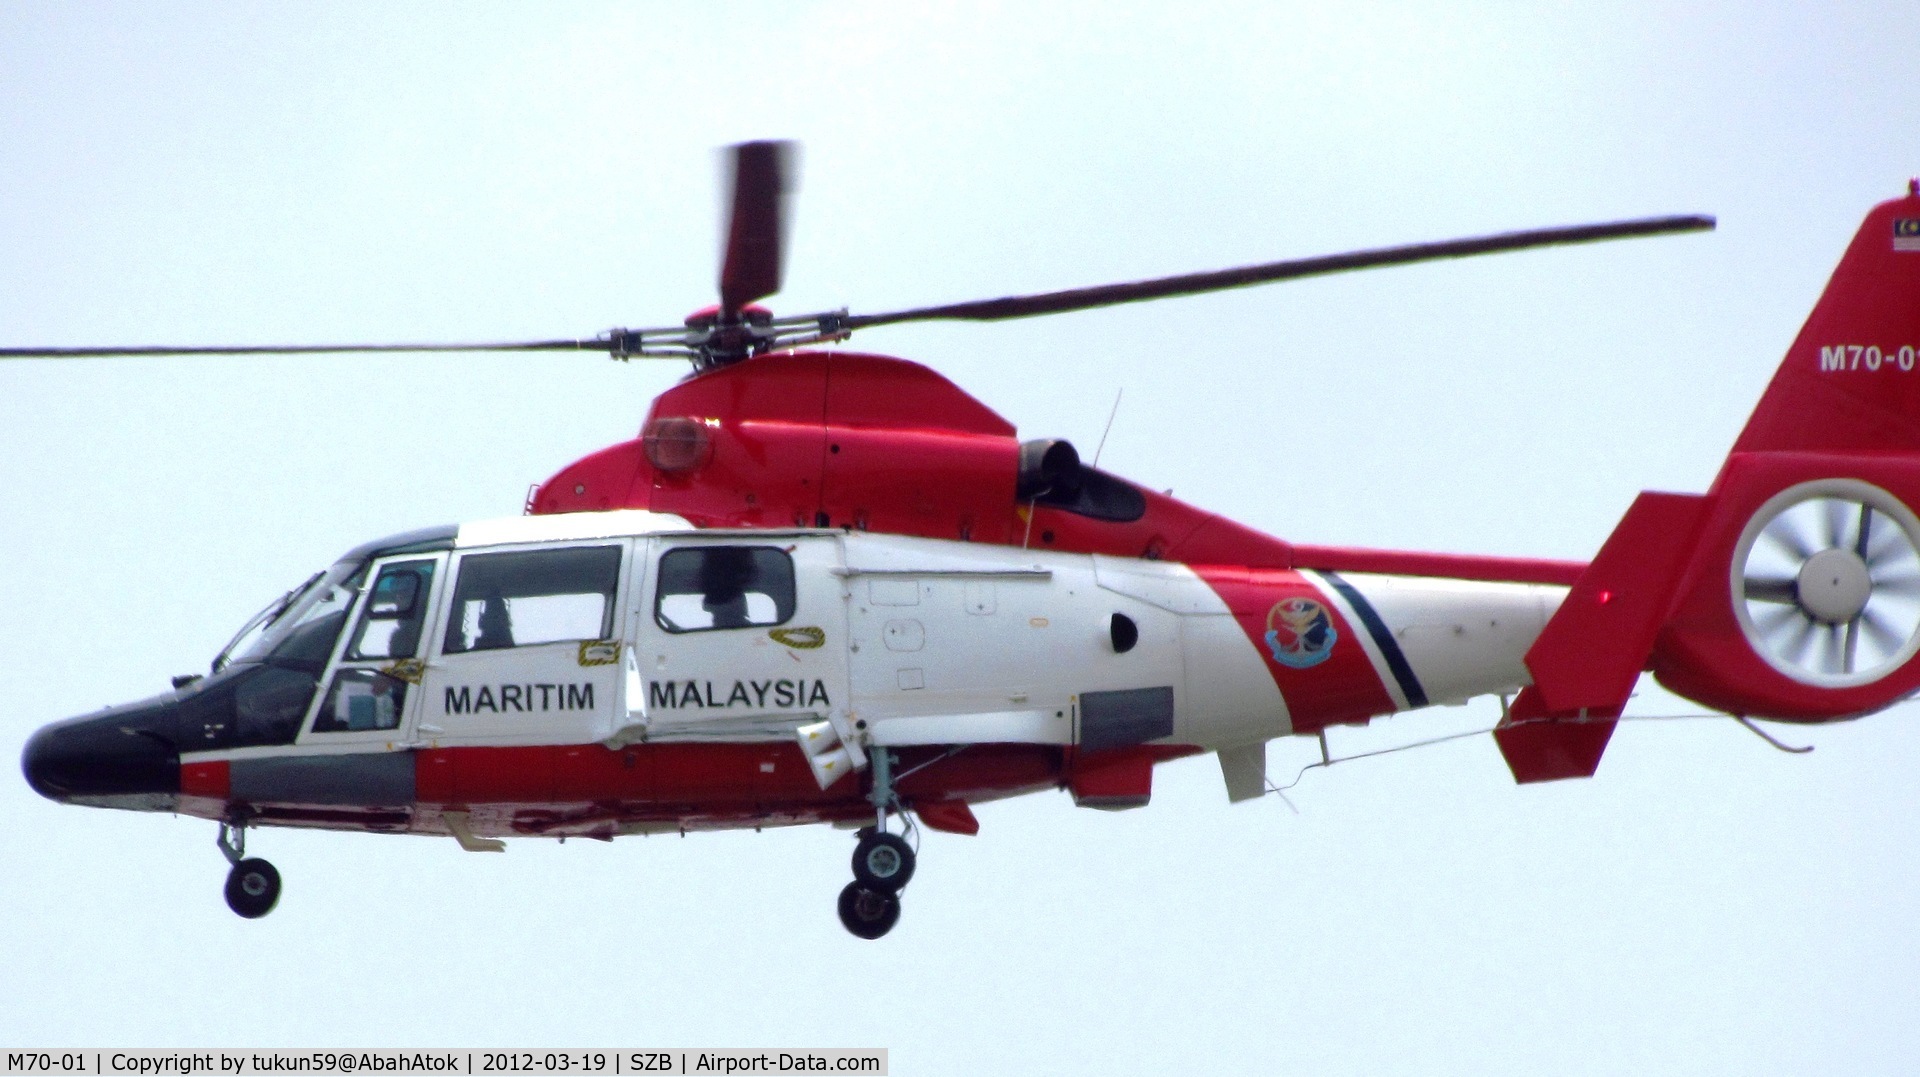 M70-01, Eurocopter AS-365N-3 Dauphin 2 C/N 6723, Malaysian Maritime Enforcement Agency
(Maritim Malaysia)